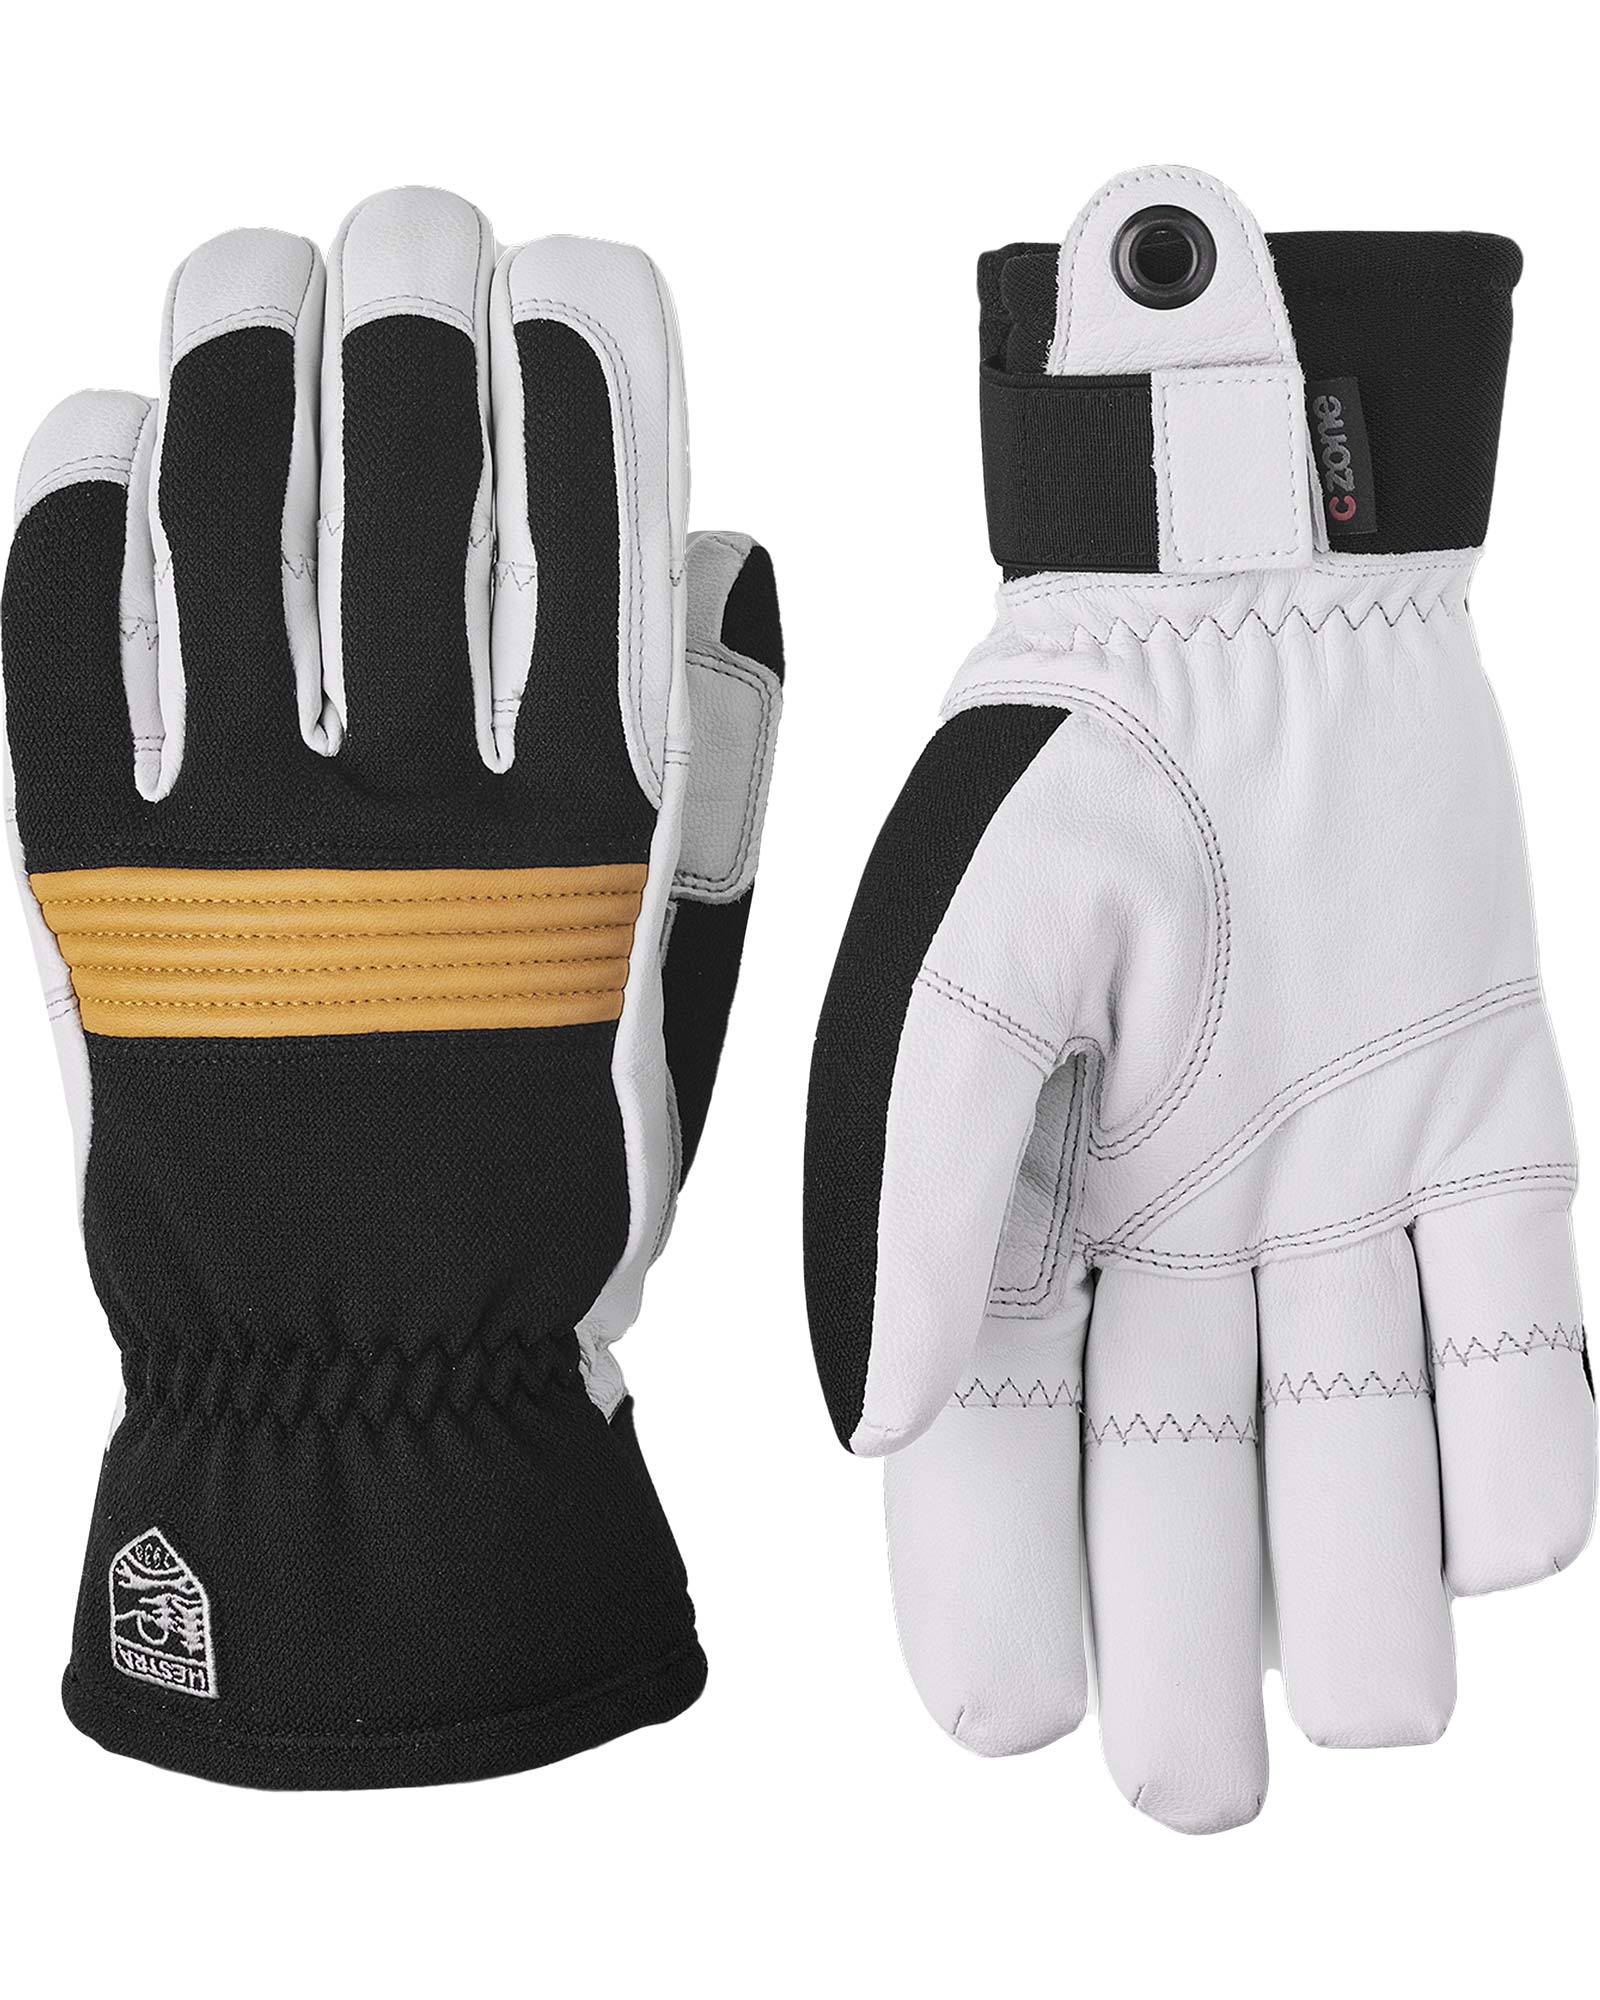 Hestra Men’s Couloir Gloves - Black/White/Tan Size 9